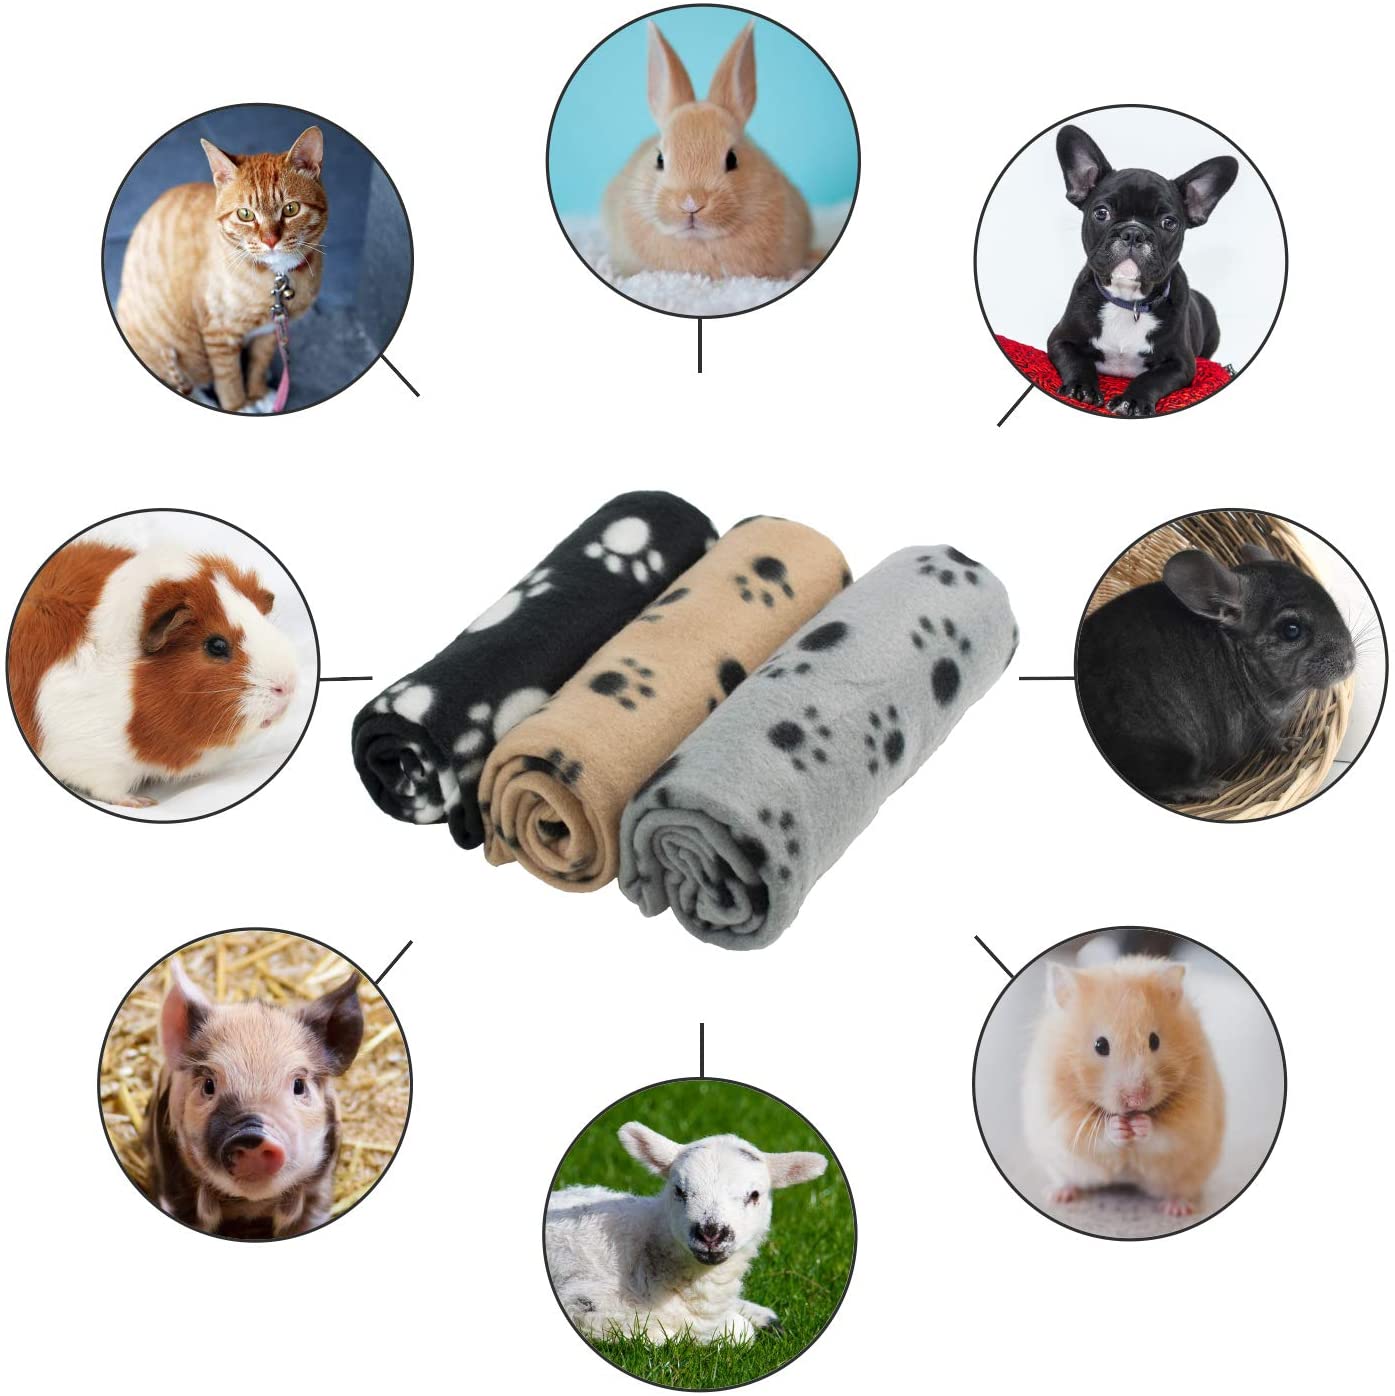  DIGIFLEX Grandes Mantas de Suave Felpa - Para Perros, Gatos, Conejos y Otras Mascotas - Una Buena Adición a la Cama de Su Animal - Mantas para Perros - Mantas de Gatos - 3 Unidades - 68cm x 92cm 